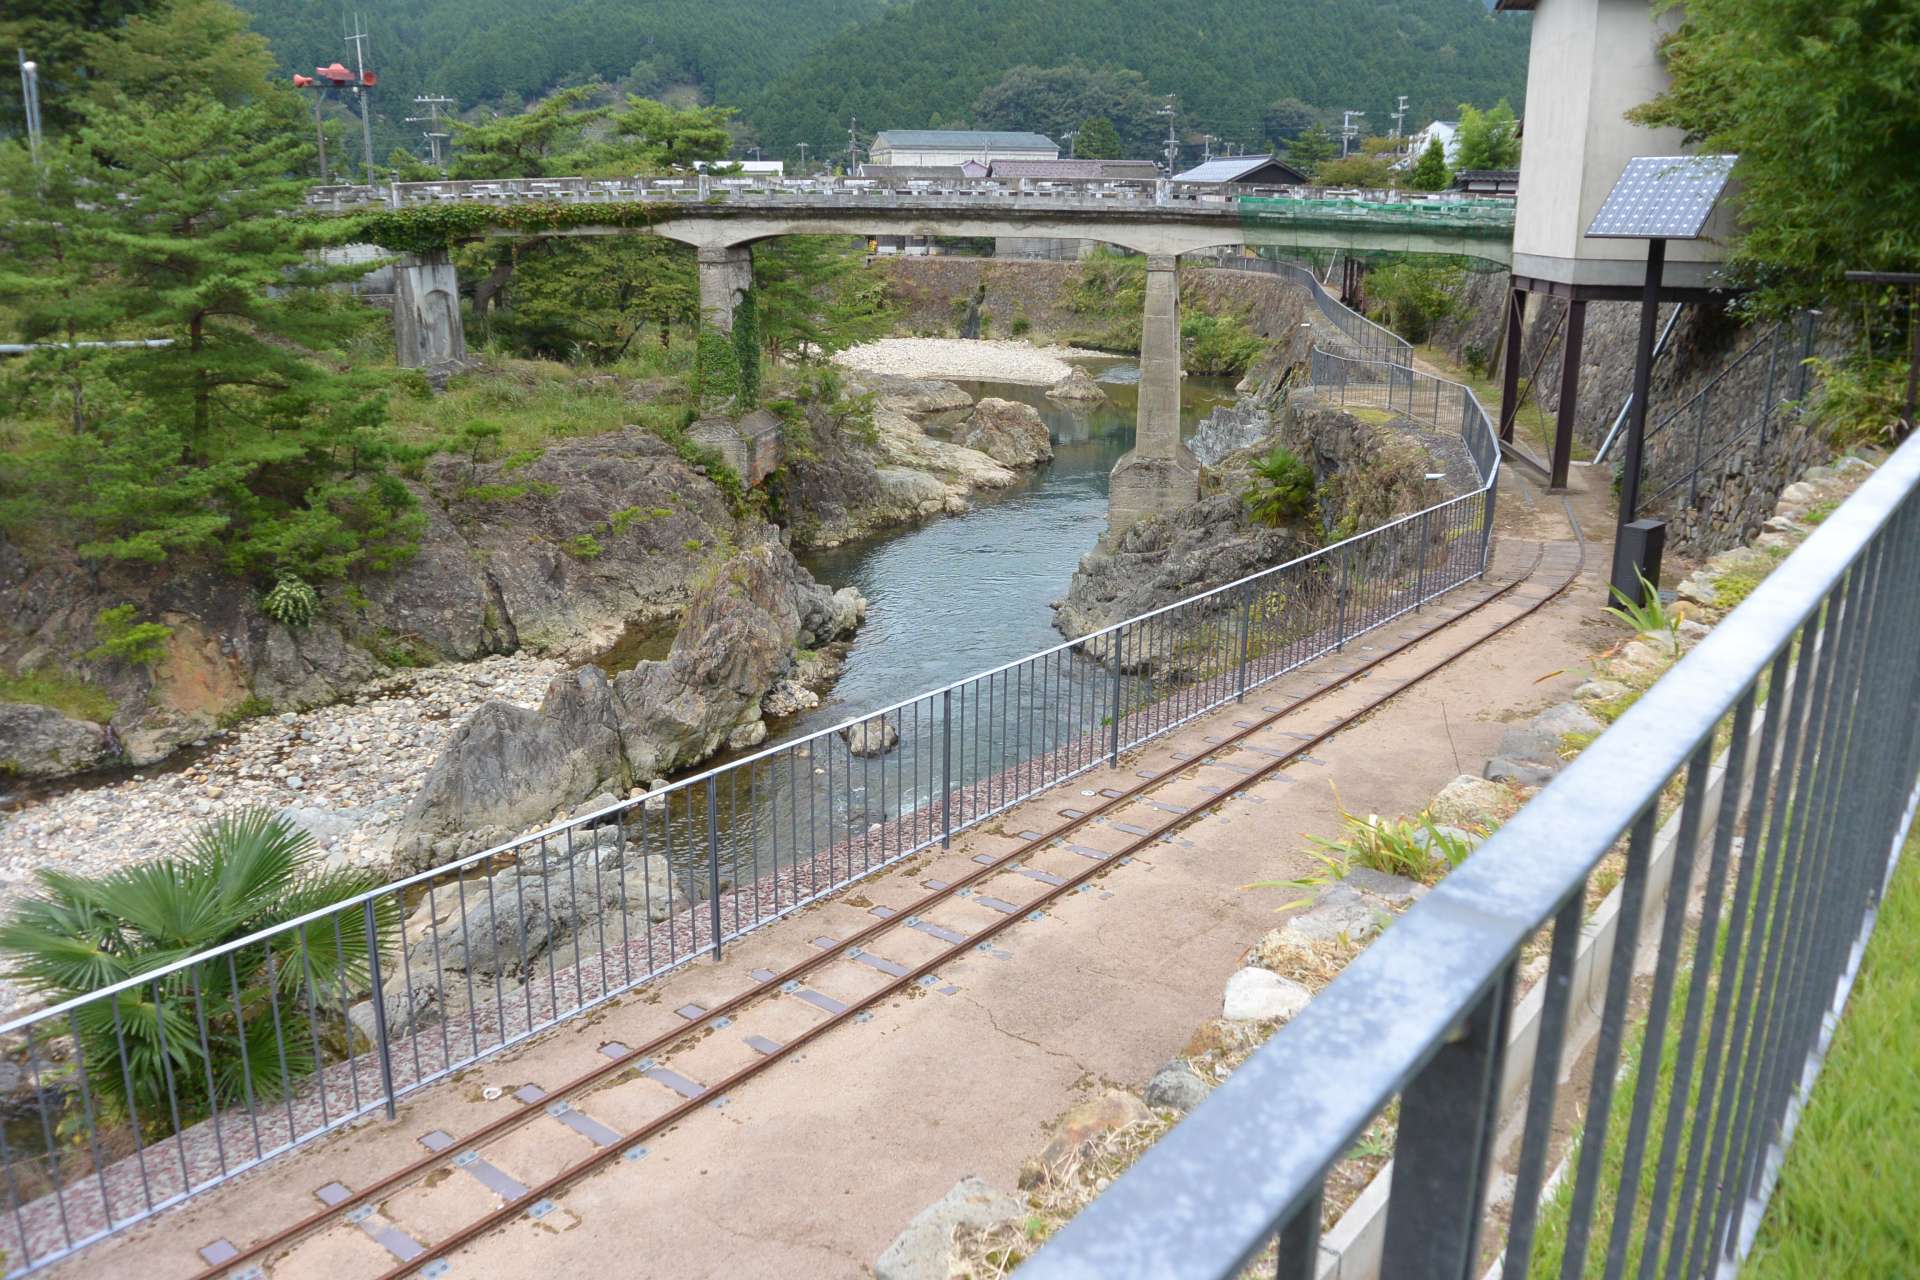 Para transportar plata, se estableció una carretera entre Ikuno y Himeji alrededor de la década de 1870, que fue la primera carretera industrial de Japón. Todavía se puede ver el camino histórico y cultural que apoyó la prosperidad de la mina de plata Ikuno y el pueblo minero.